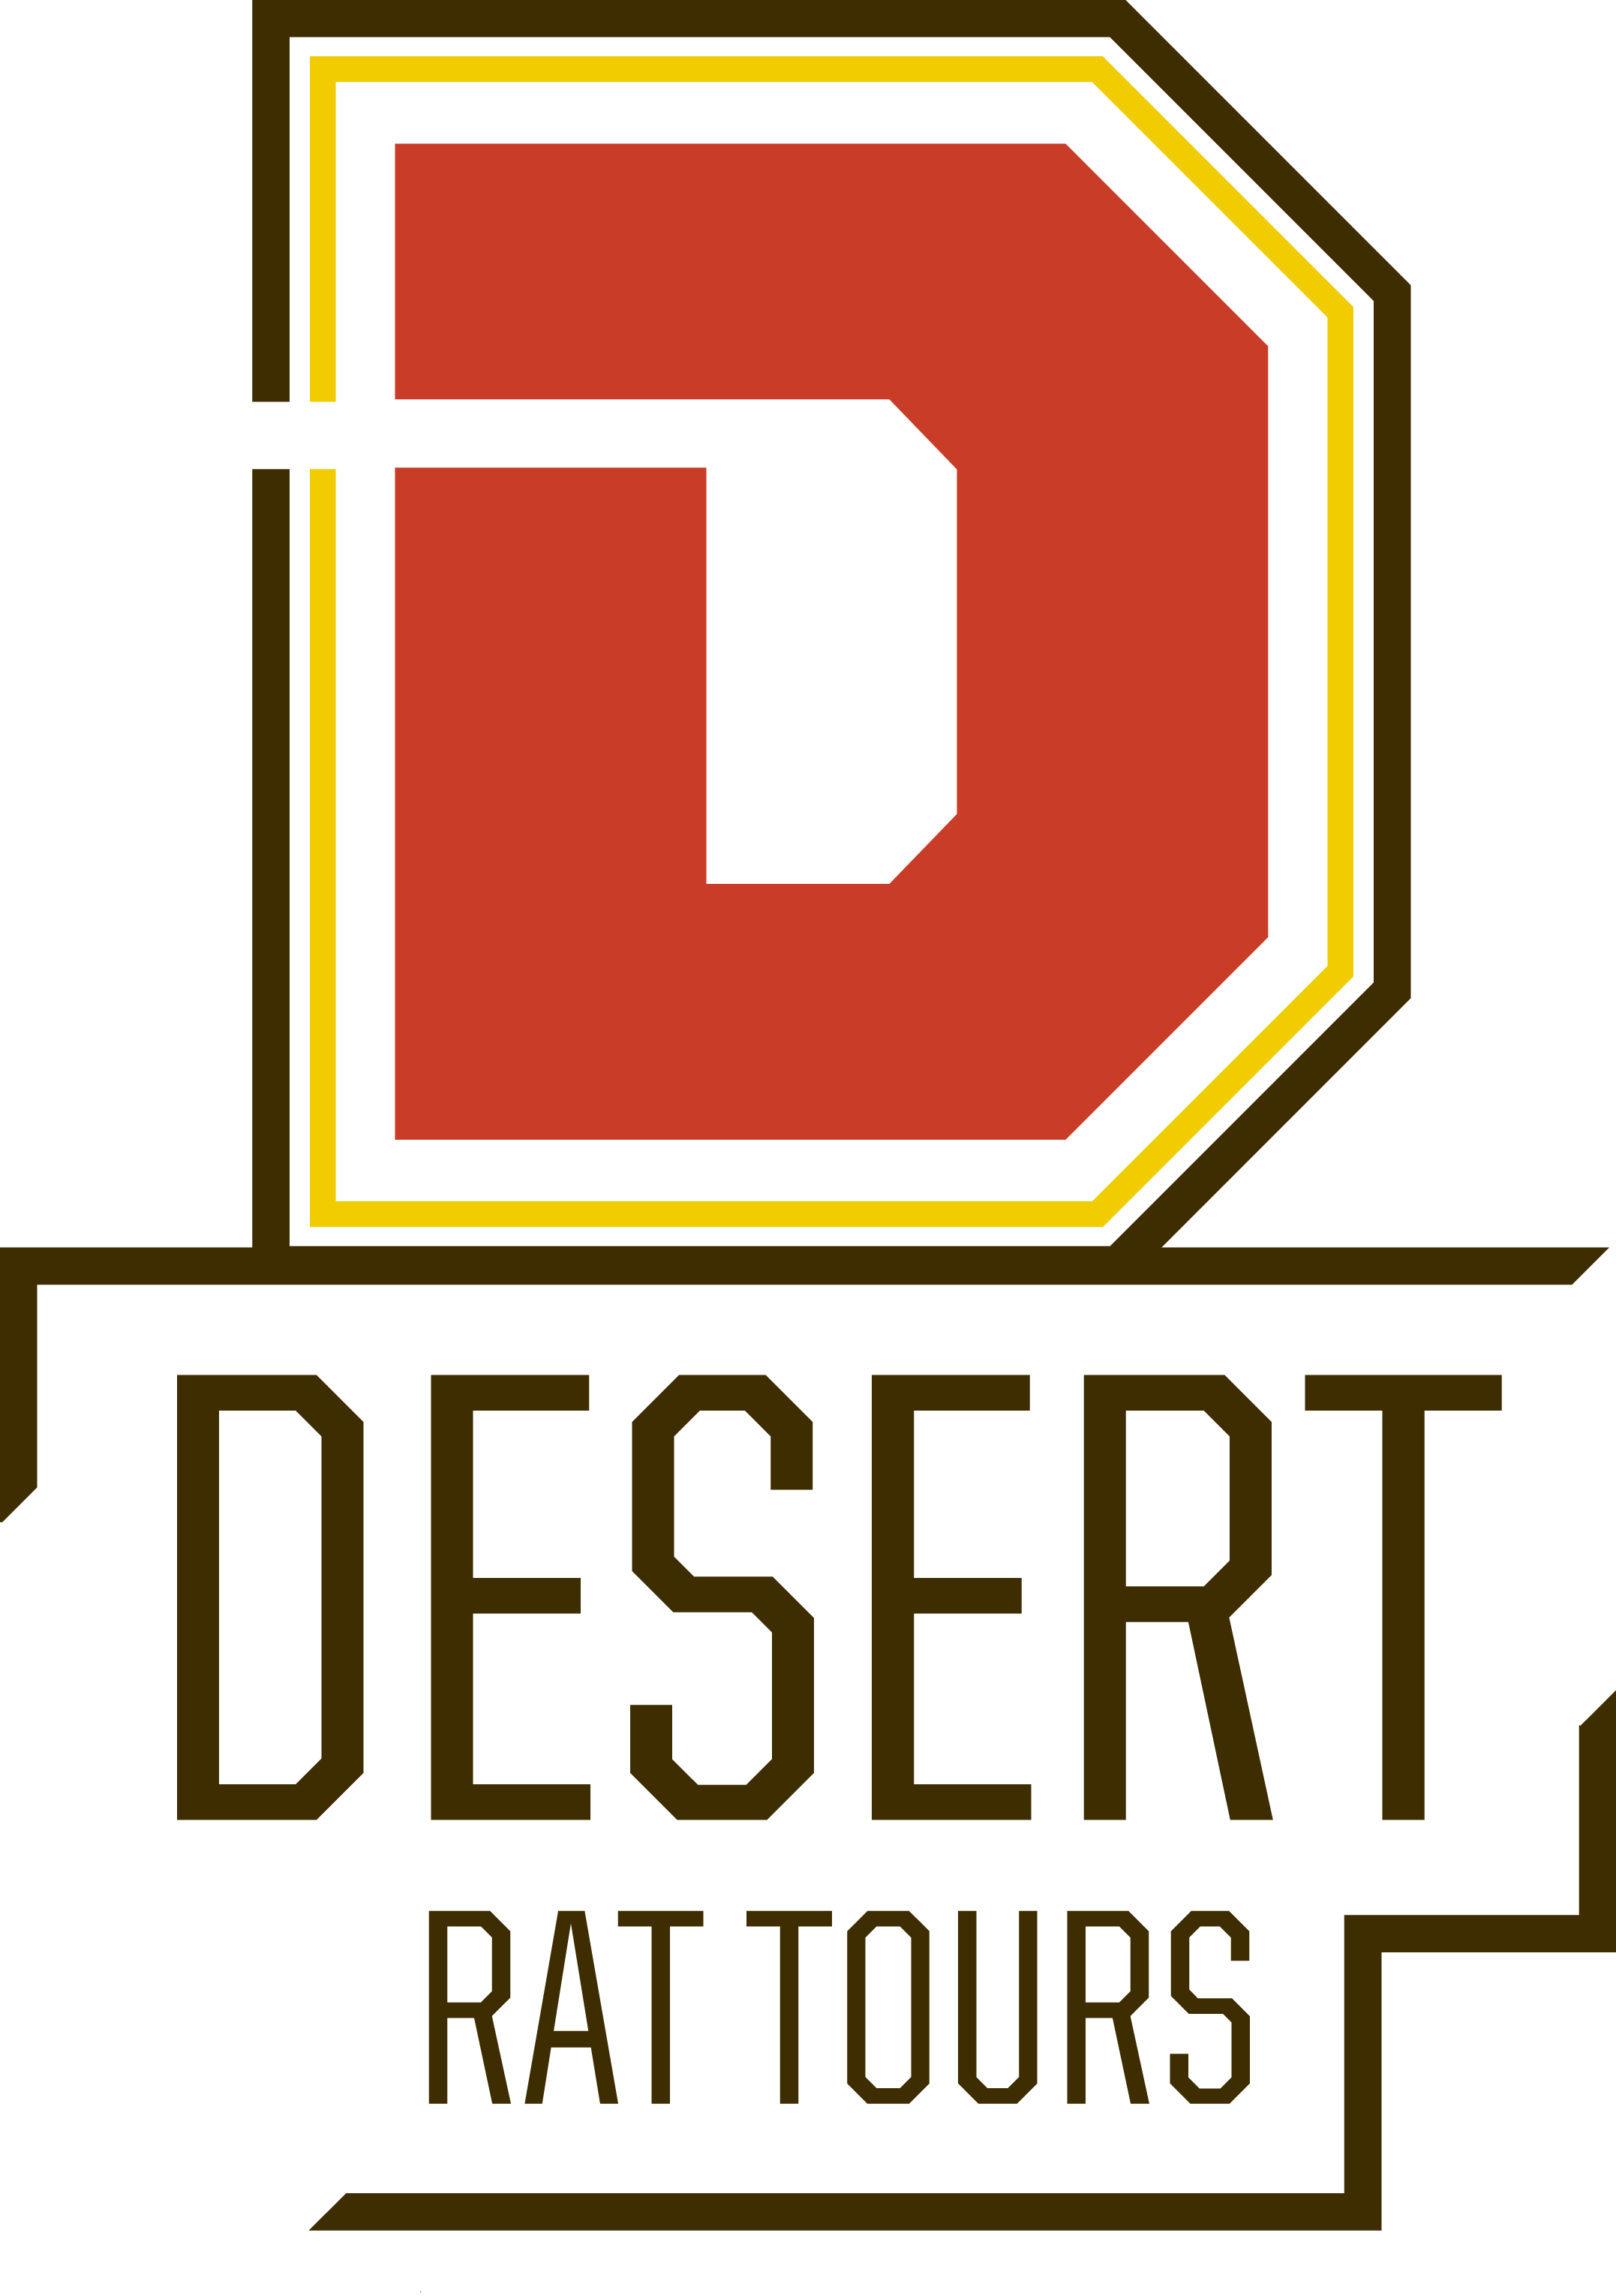 DRT-full logo.png